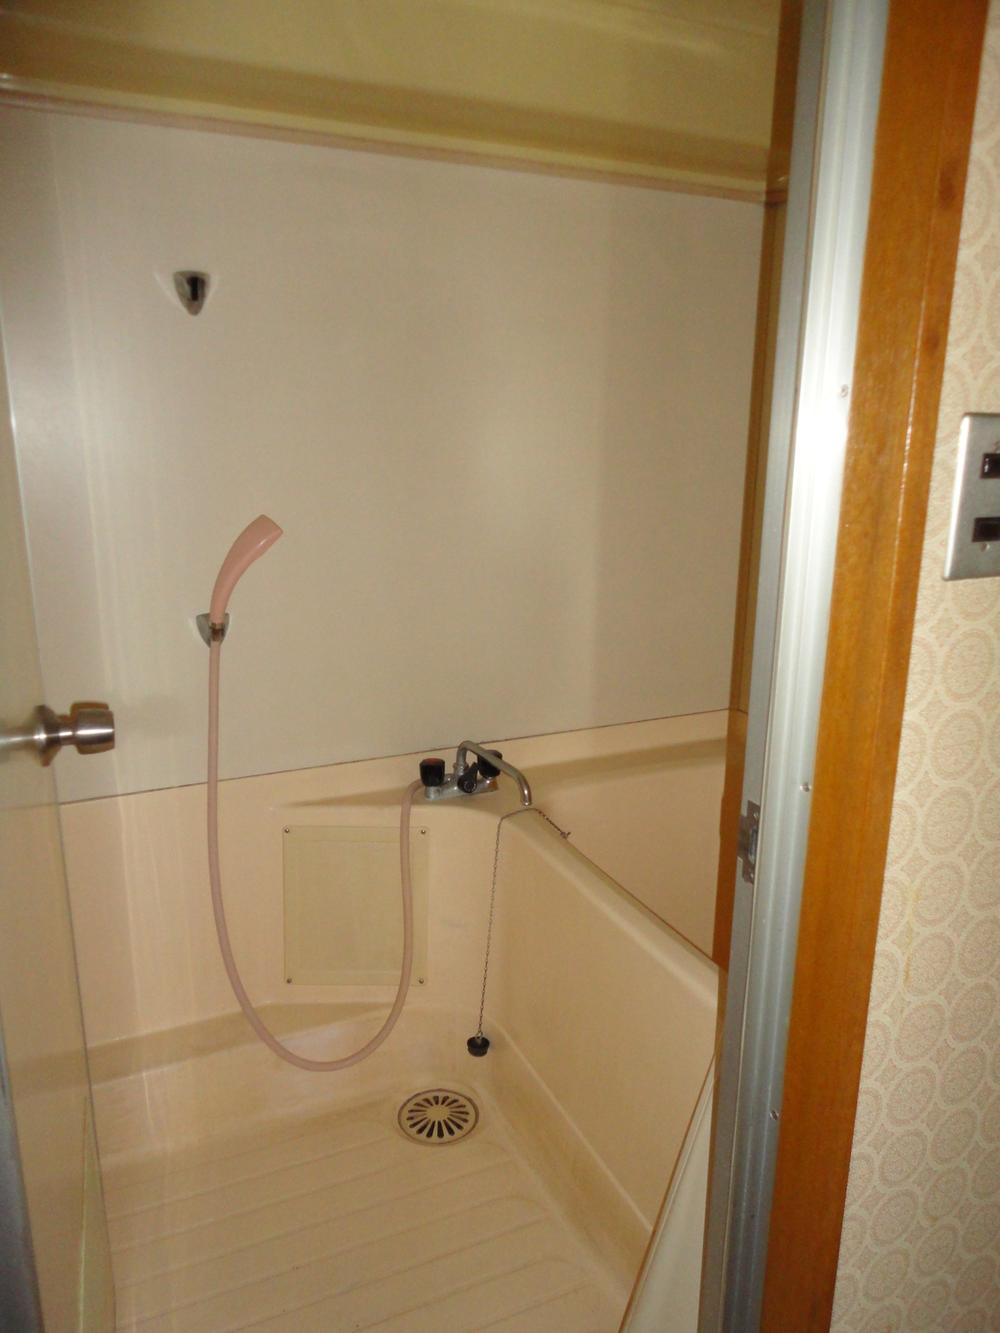 Bathroom. Indoor (February 2011) shooting